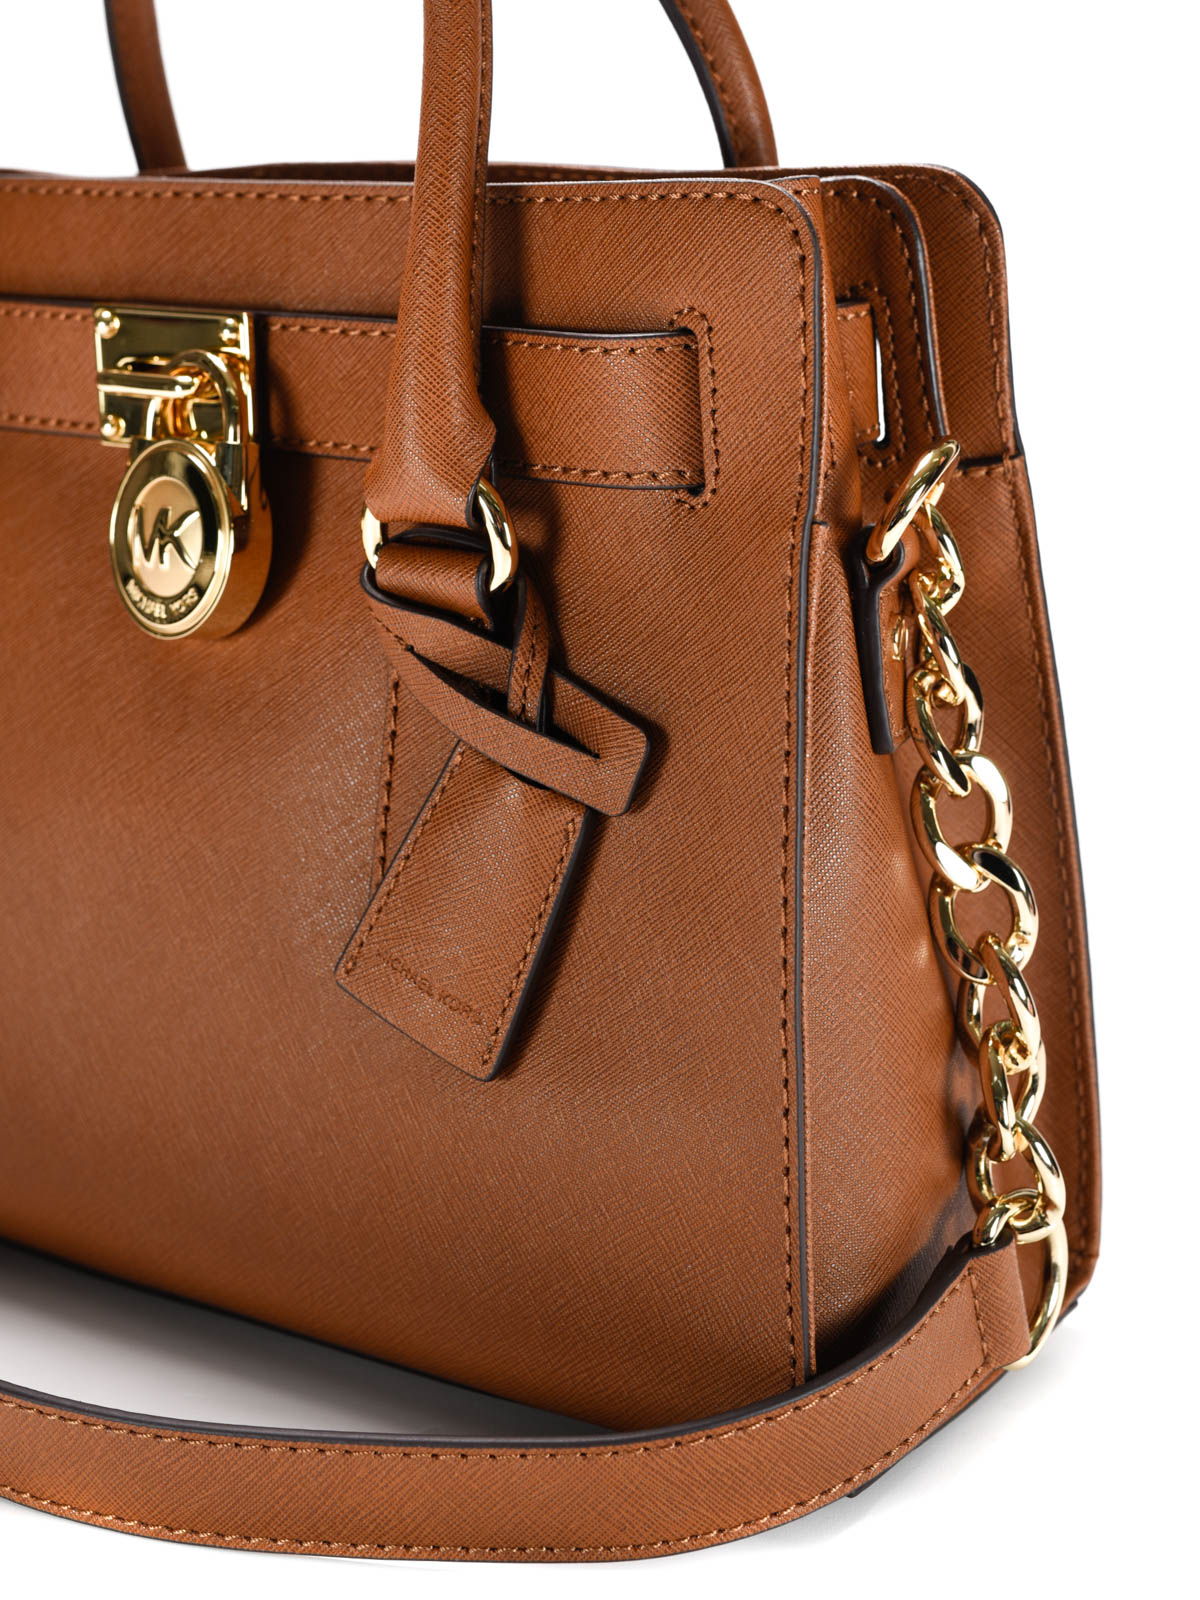 bags - Hamilton leather satchel 30S2GHMS3L